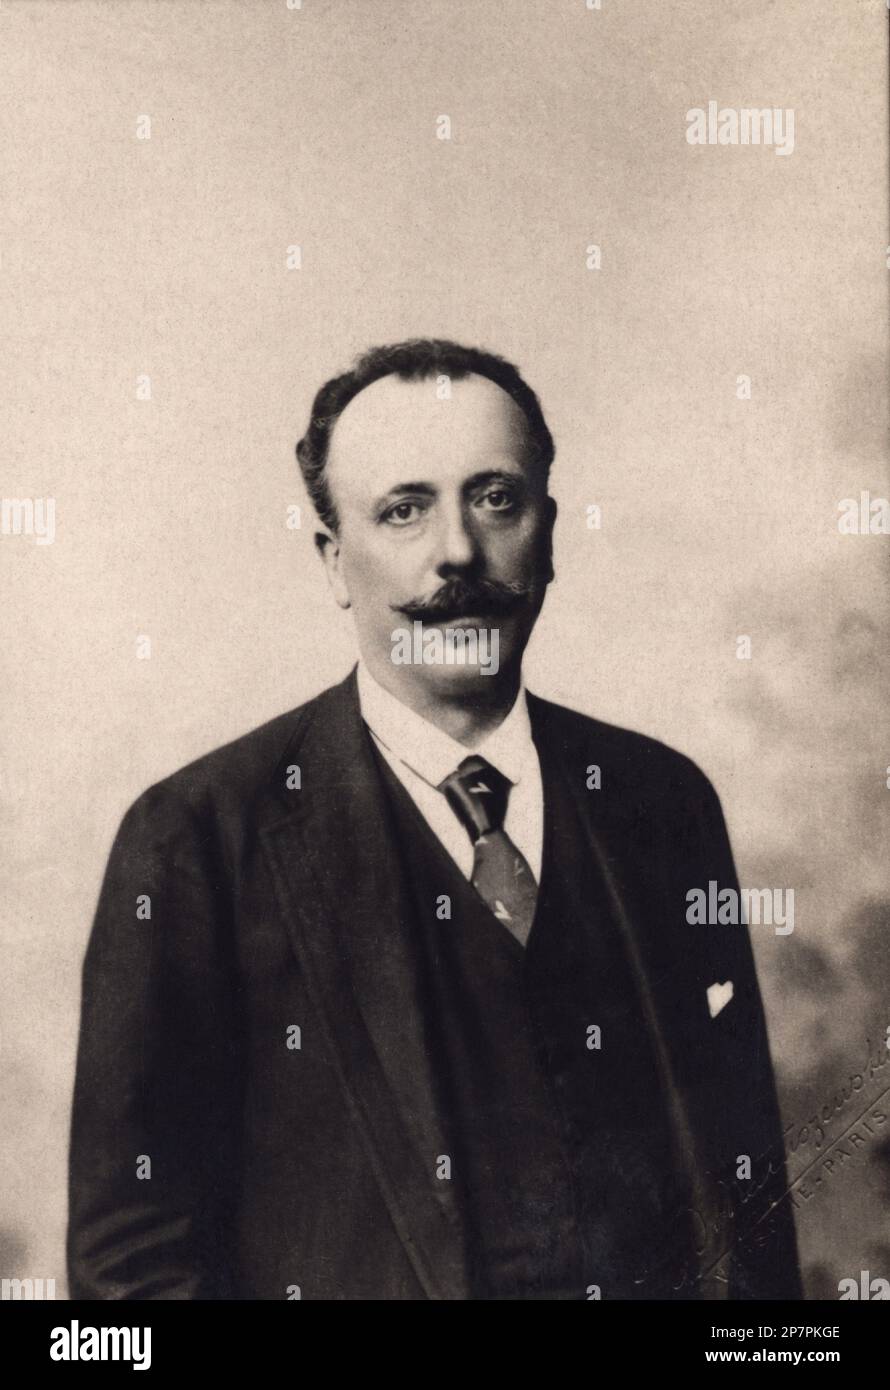 1890 c , FRANKREICH : Comte Adrien Albert Marie DE MUN ( 1841 - 1914 ) war eine französische politische Figur und Reformerin . An der Akademie von 1897 bis 1914 . - POLITICO - POLITICA - POLITIC - foto storiche - foto storica - Portrait - ritratto - Baffi - Schnurrbart - Krawatte - Cravatta - Halsband - colletto - NOBILI - ADEL - nobiltà - Conte --- Archivio GBB Stockfoto